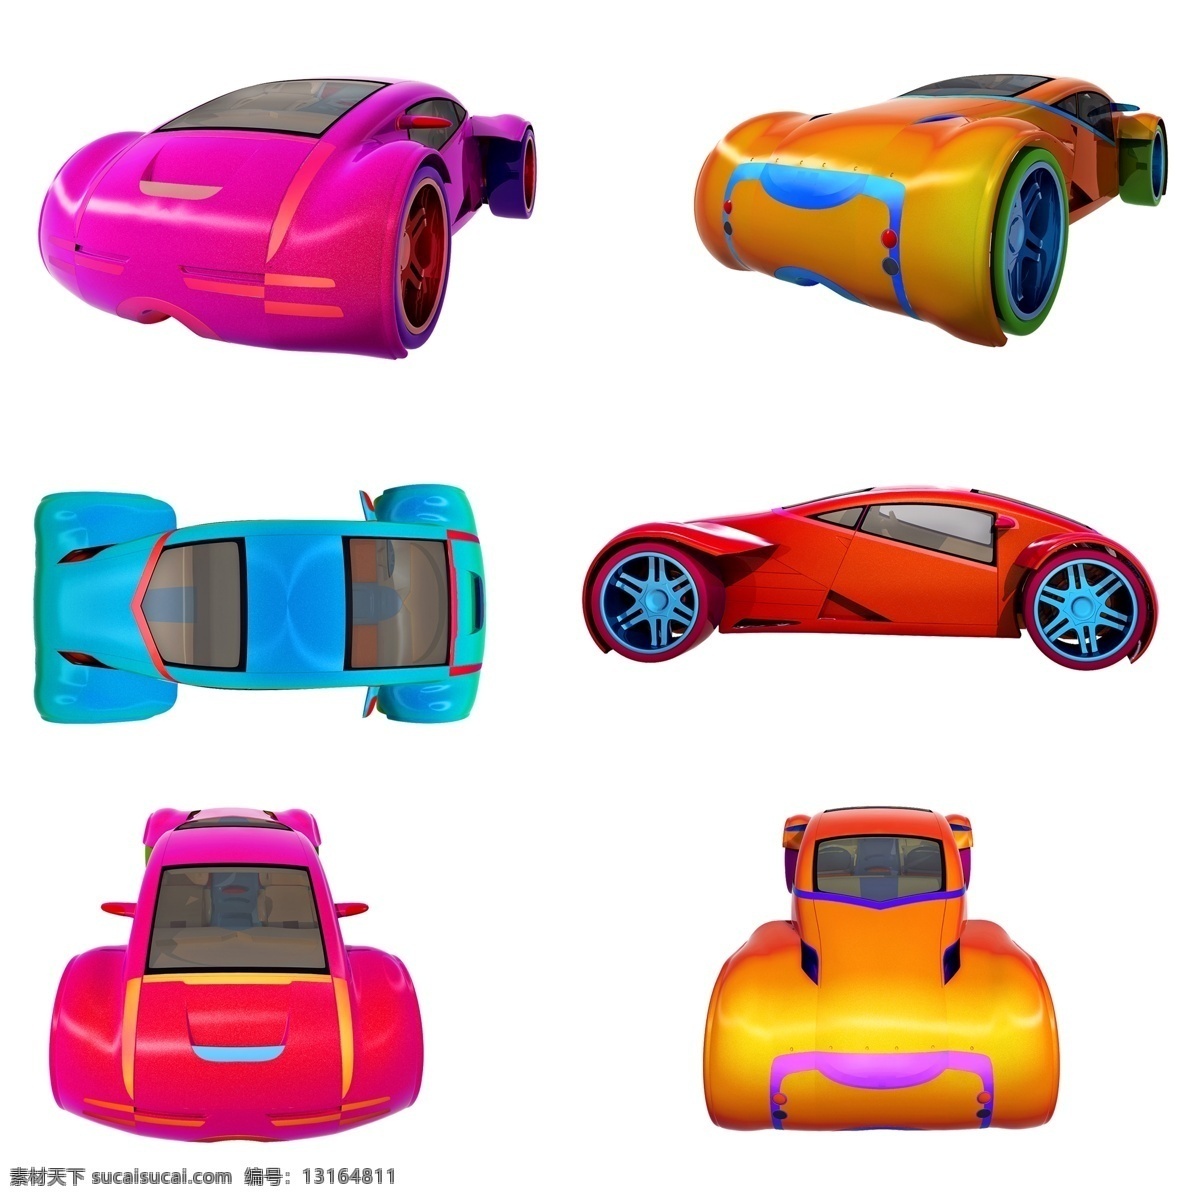 科幻 轿车 套 图 立体 质感 精致 炫酷 小车 汽车 未来 跑车 渐变色 png图 创意 套图